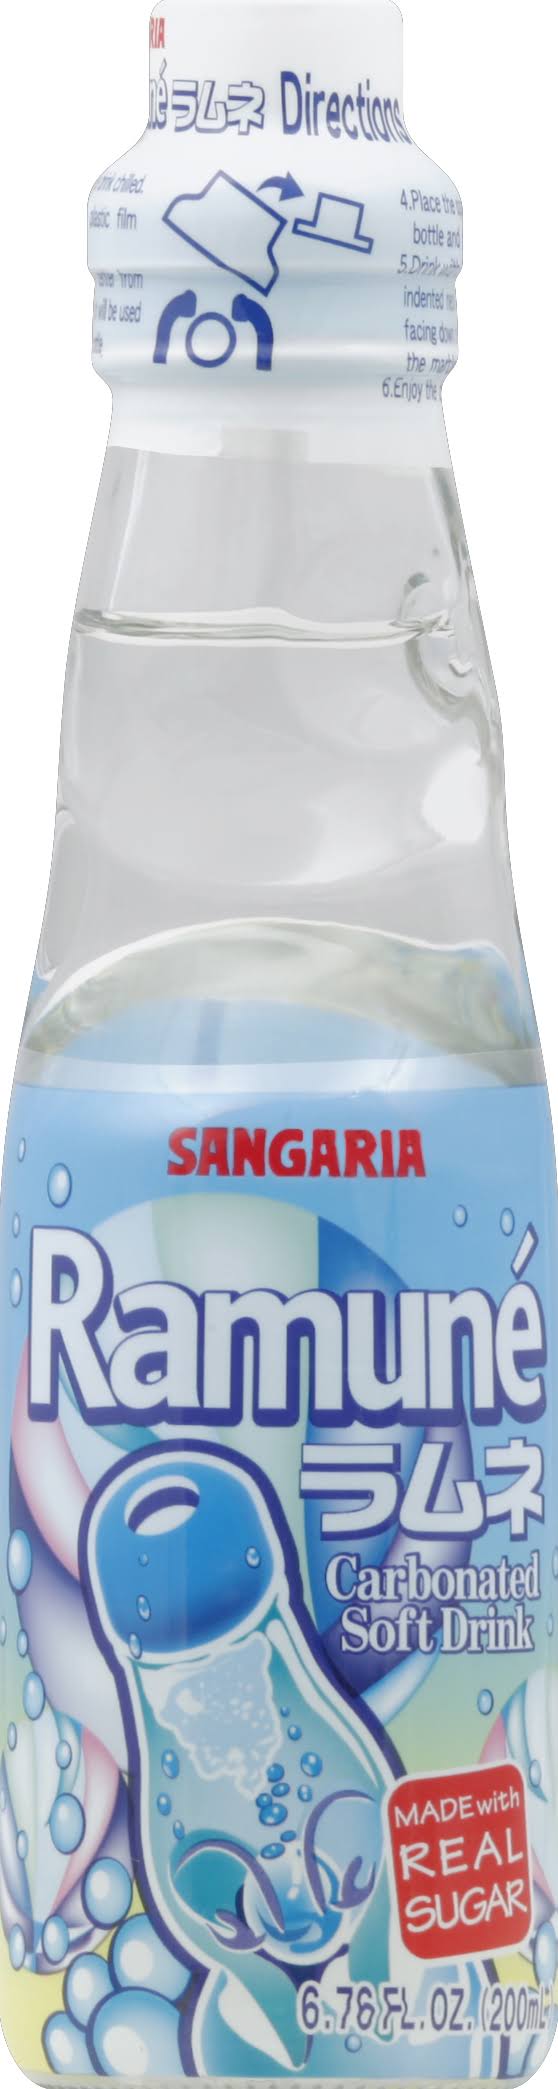 Sangaria Ramune Carbonated Flavored Drink